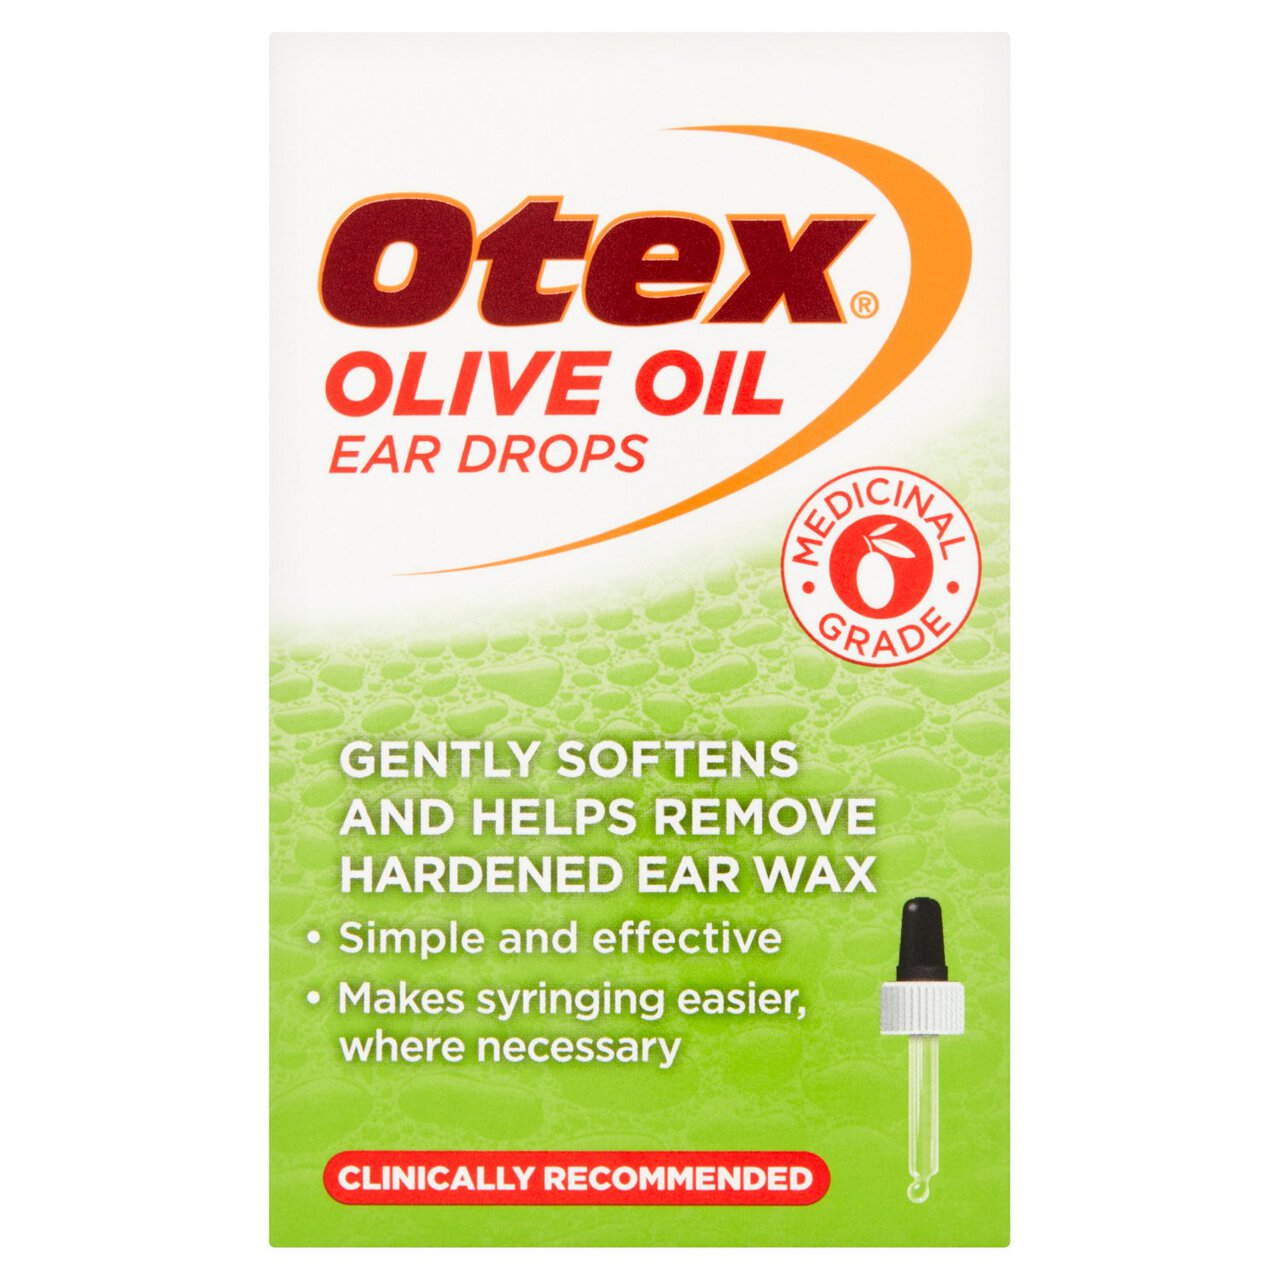 Otex Olive Oil Ear Drops